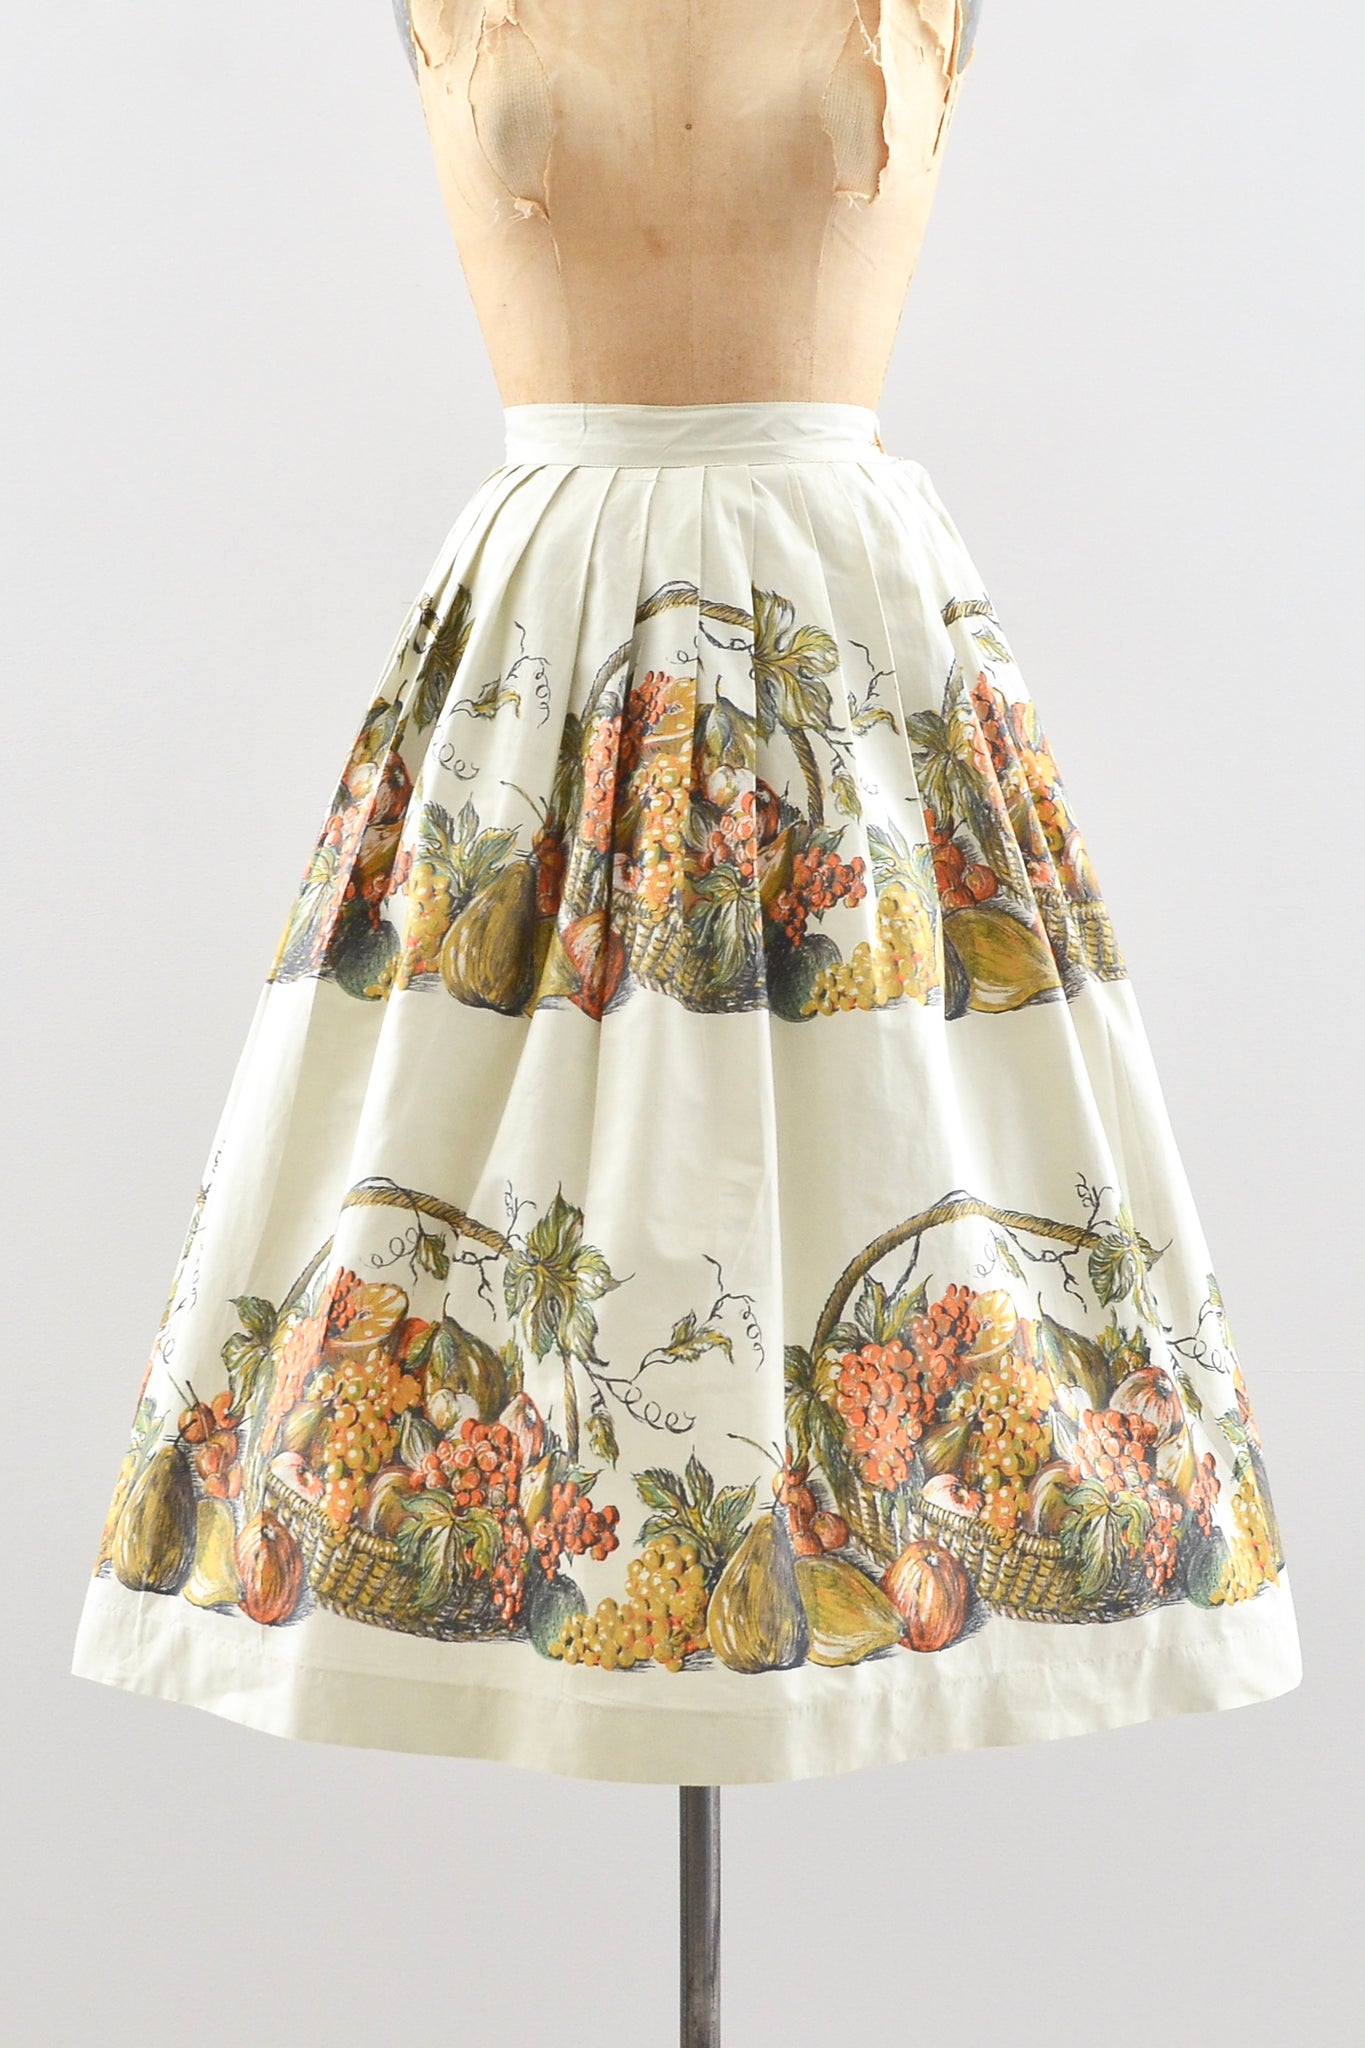 Harvest Skirt / S